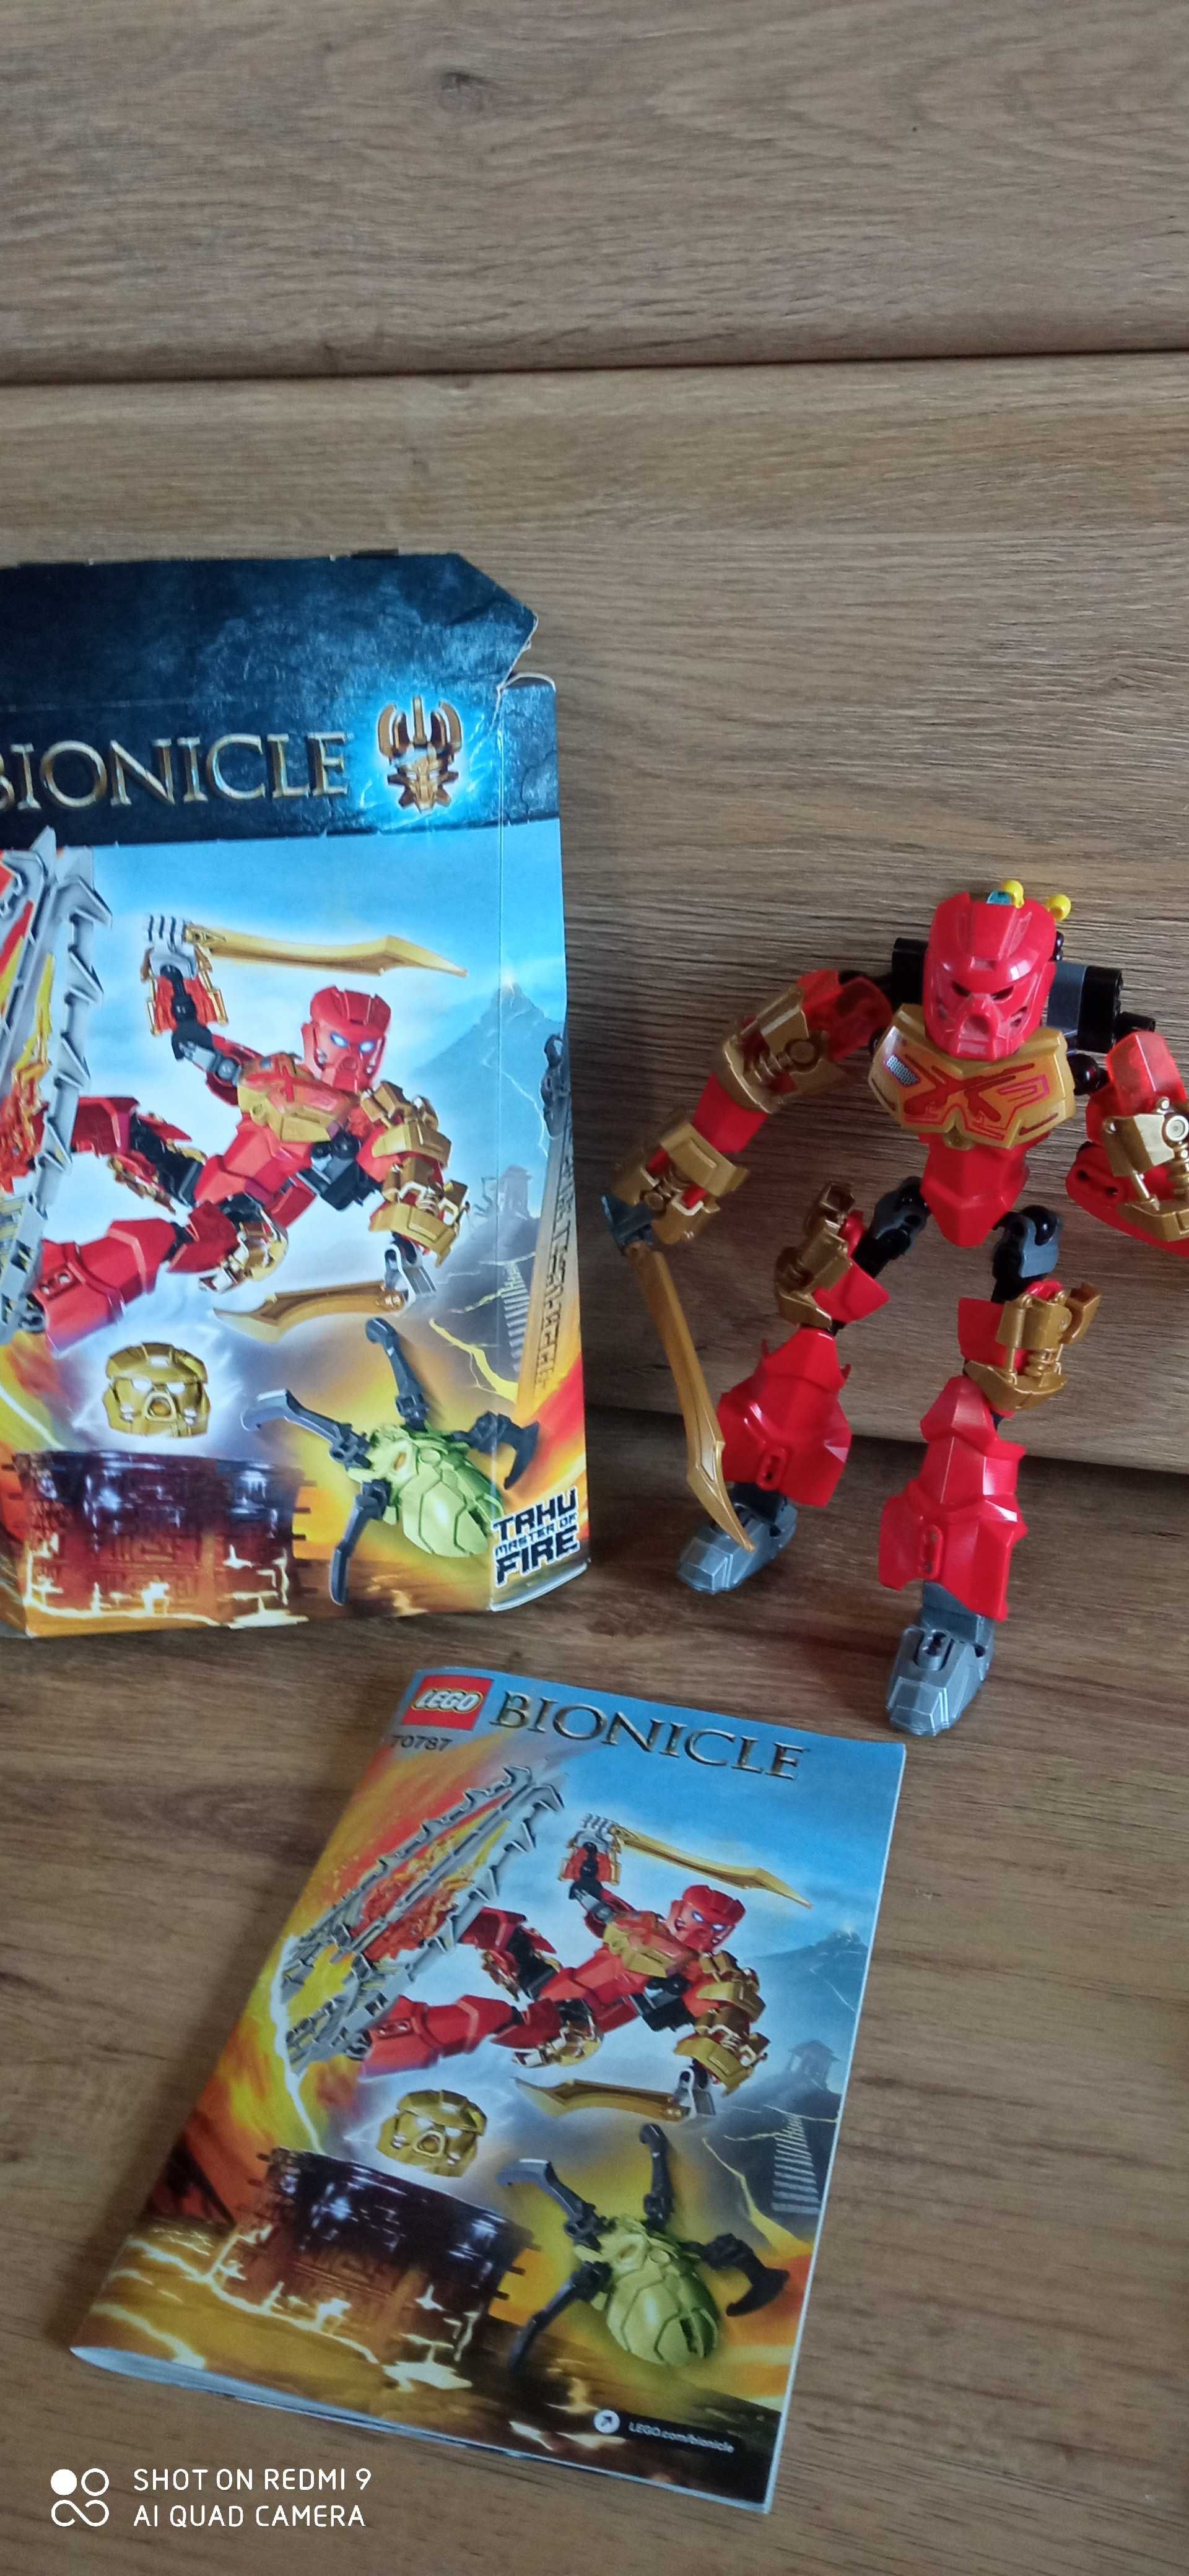 LEGO Bionicle 70787